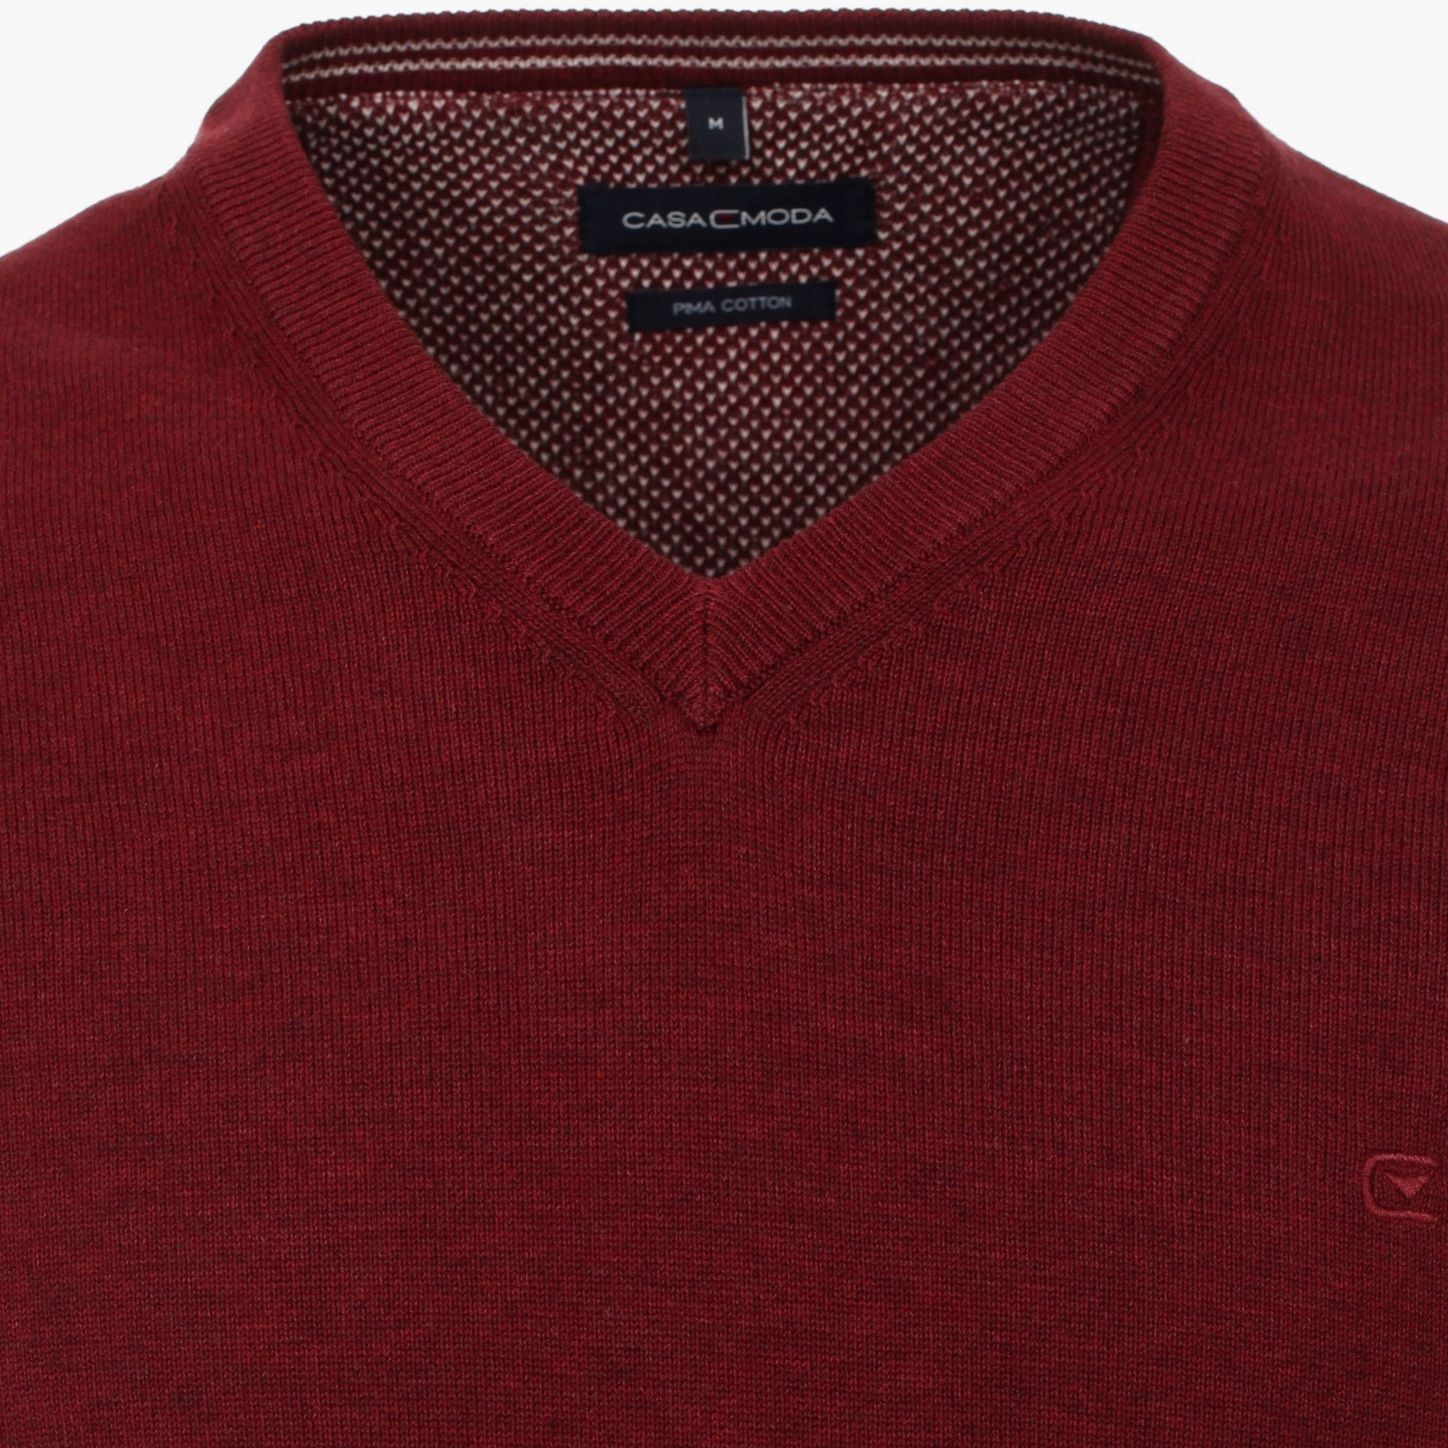 Пуловер мужской Casamoda 004430-430 цвет Каберне